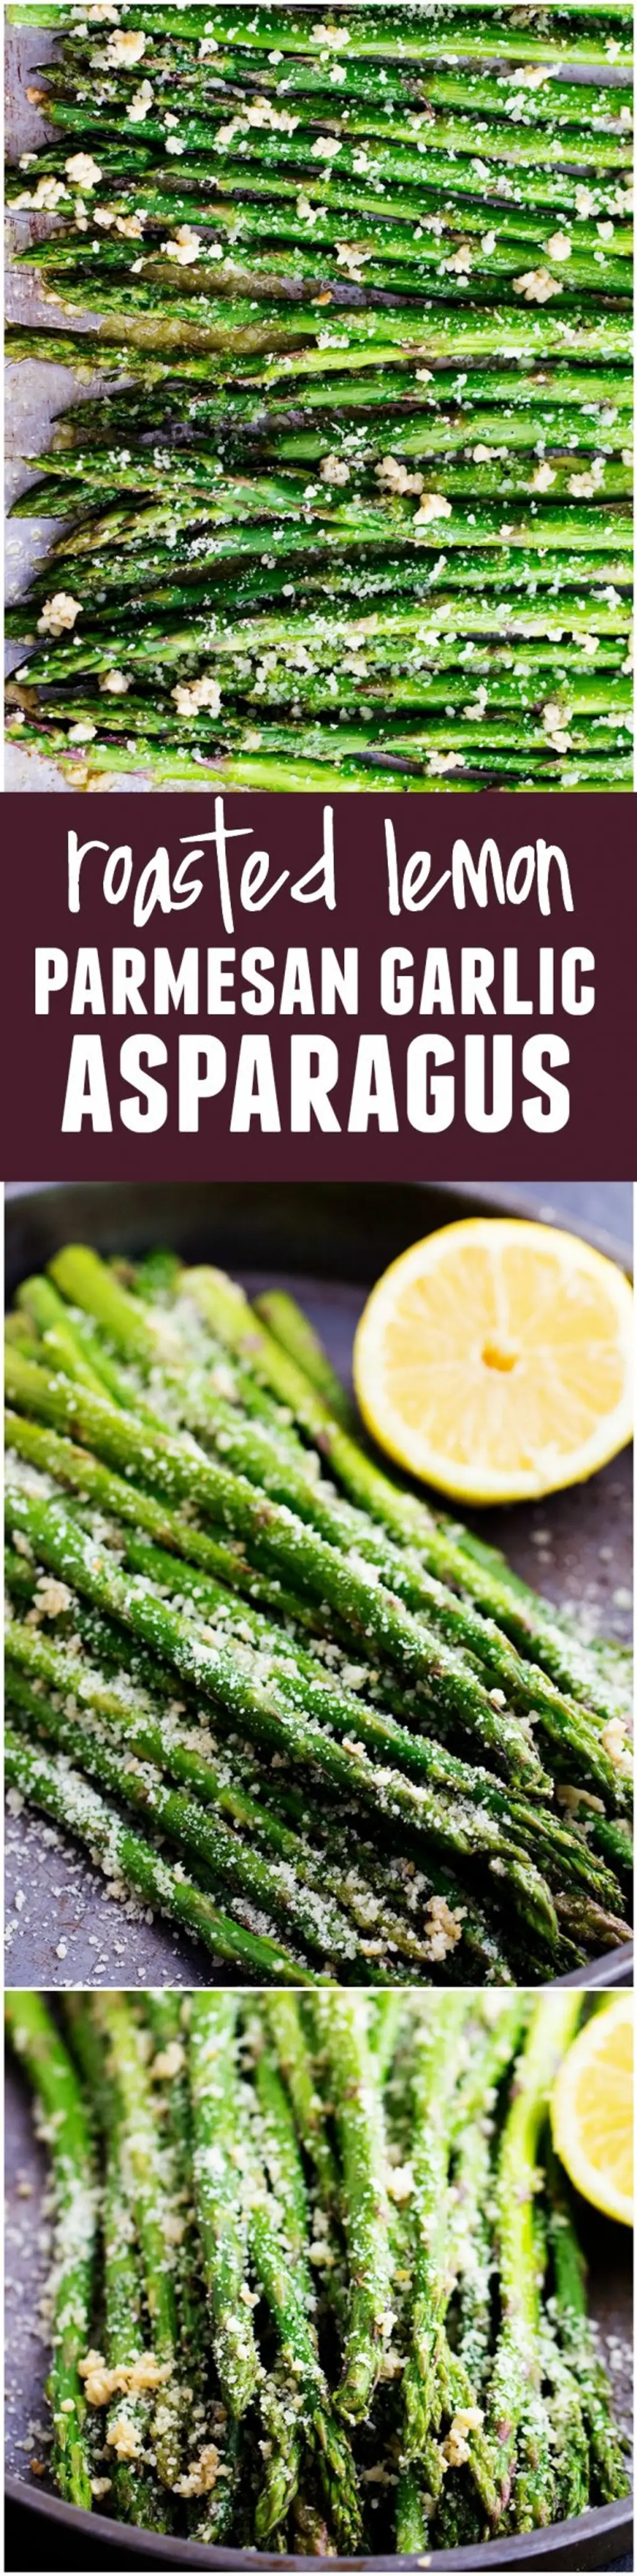 Roasted Lemon Parmesan Garlic Asparagus